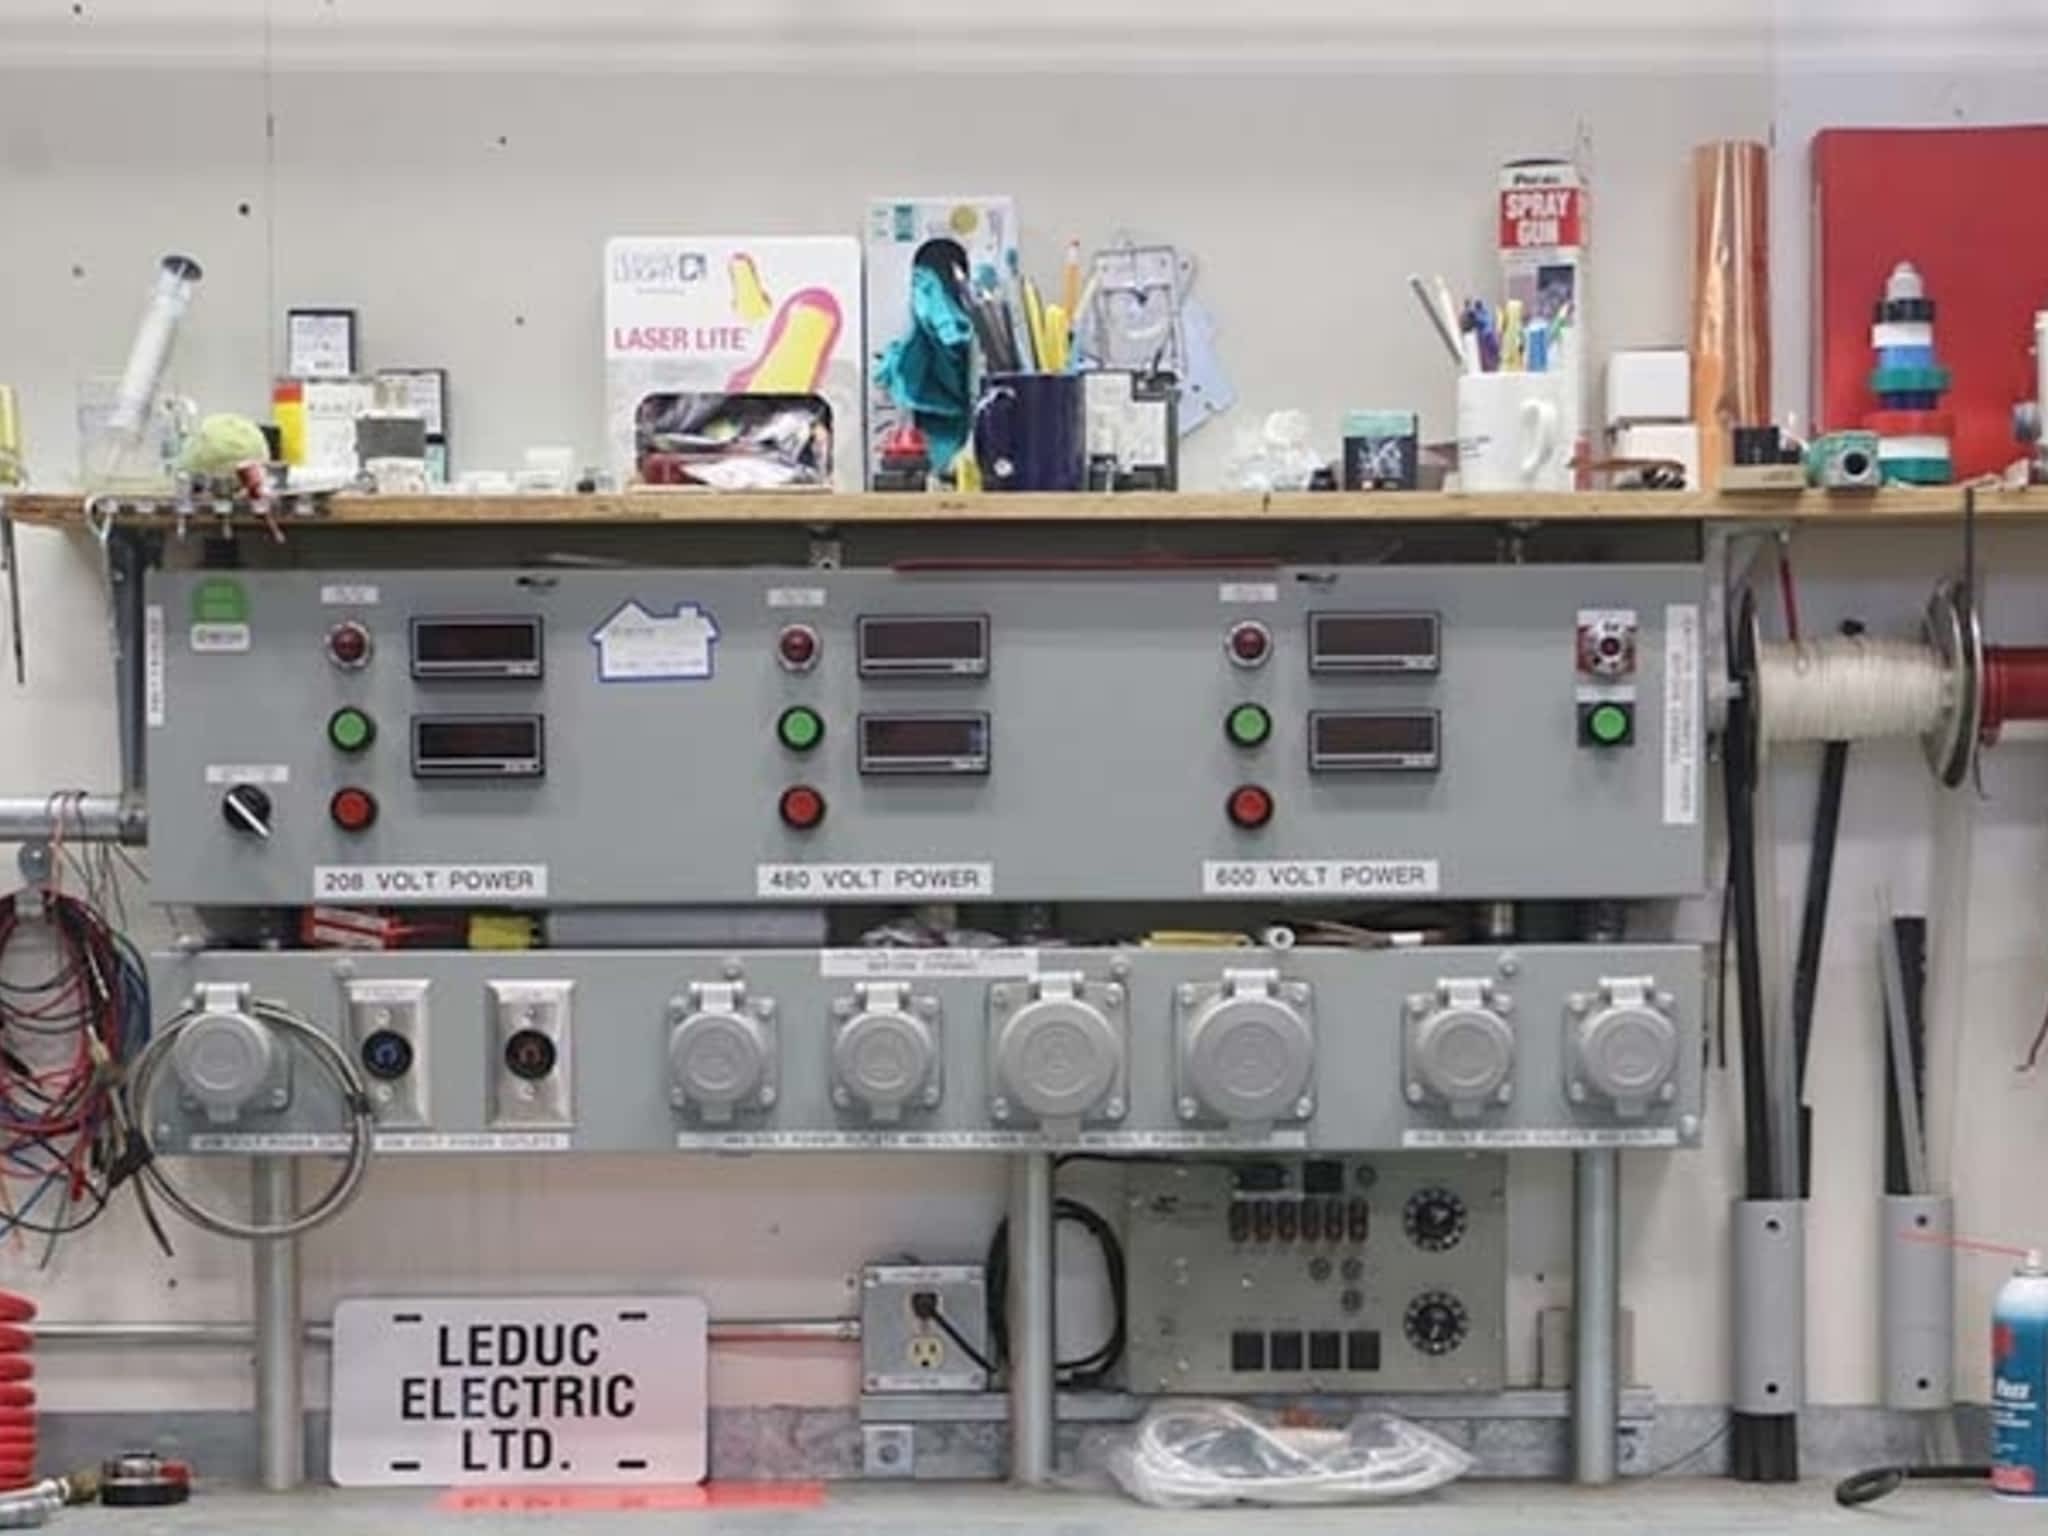 photo Leduc Electric Ltd